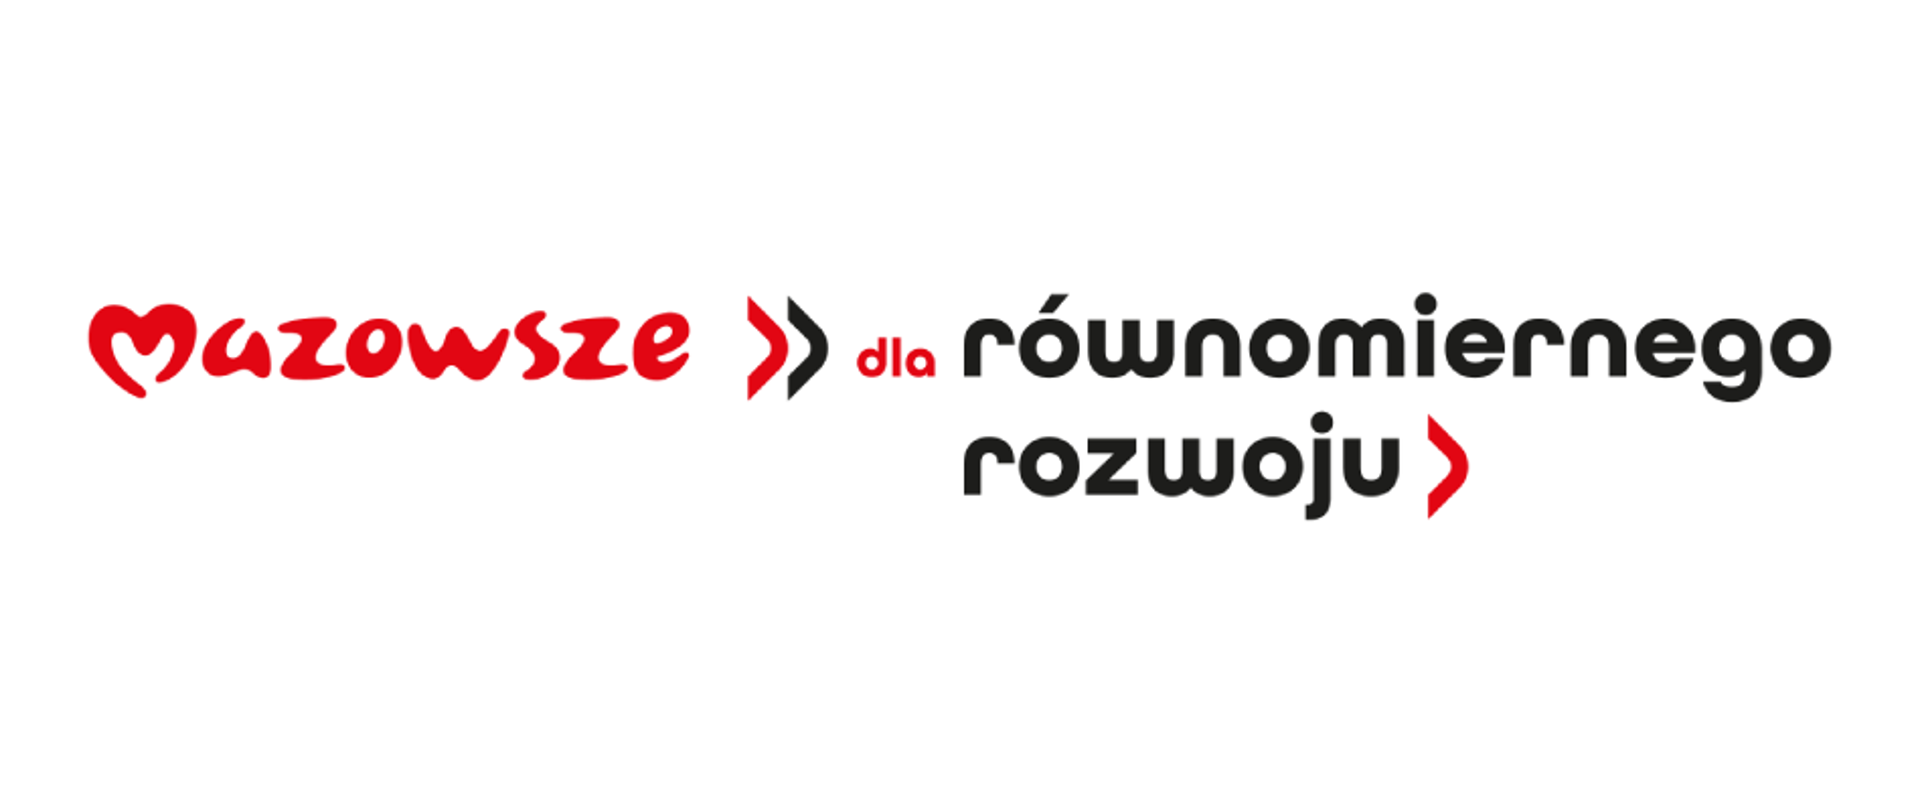 Biały baner z logotypem Mazowsze dla równomiernego rozwoju